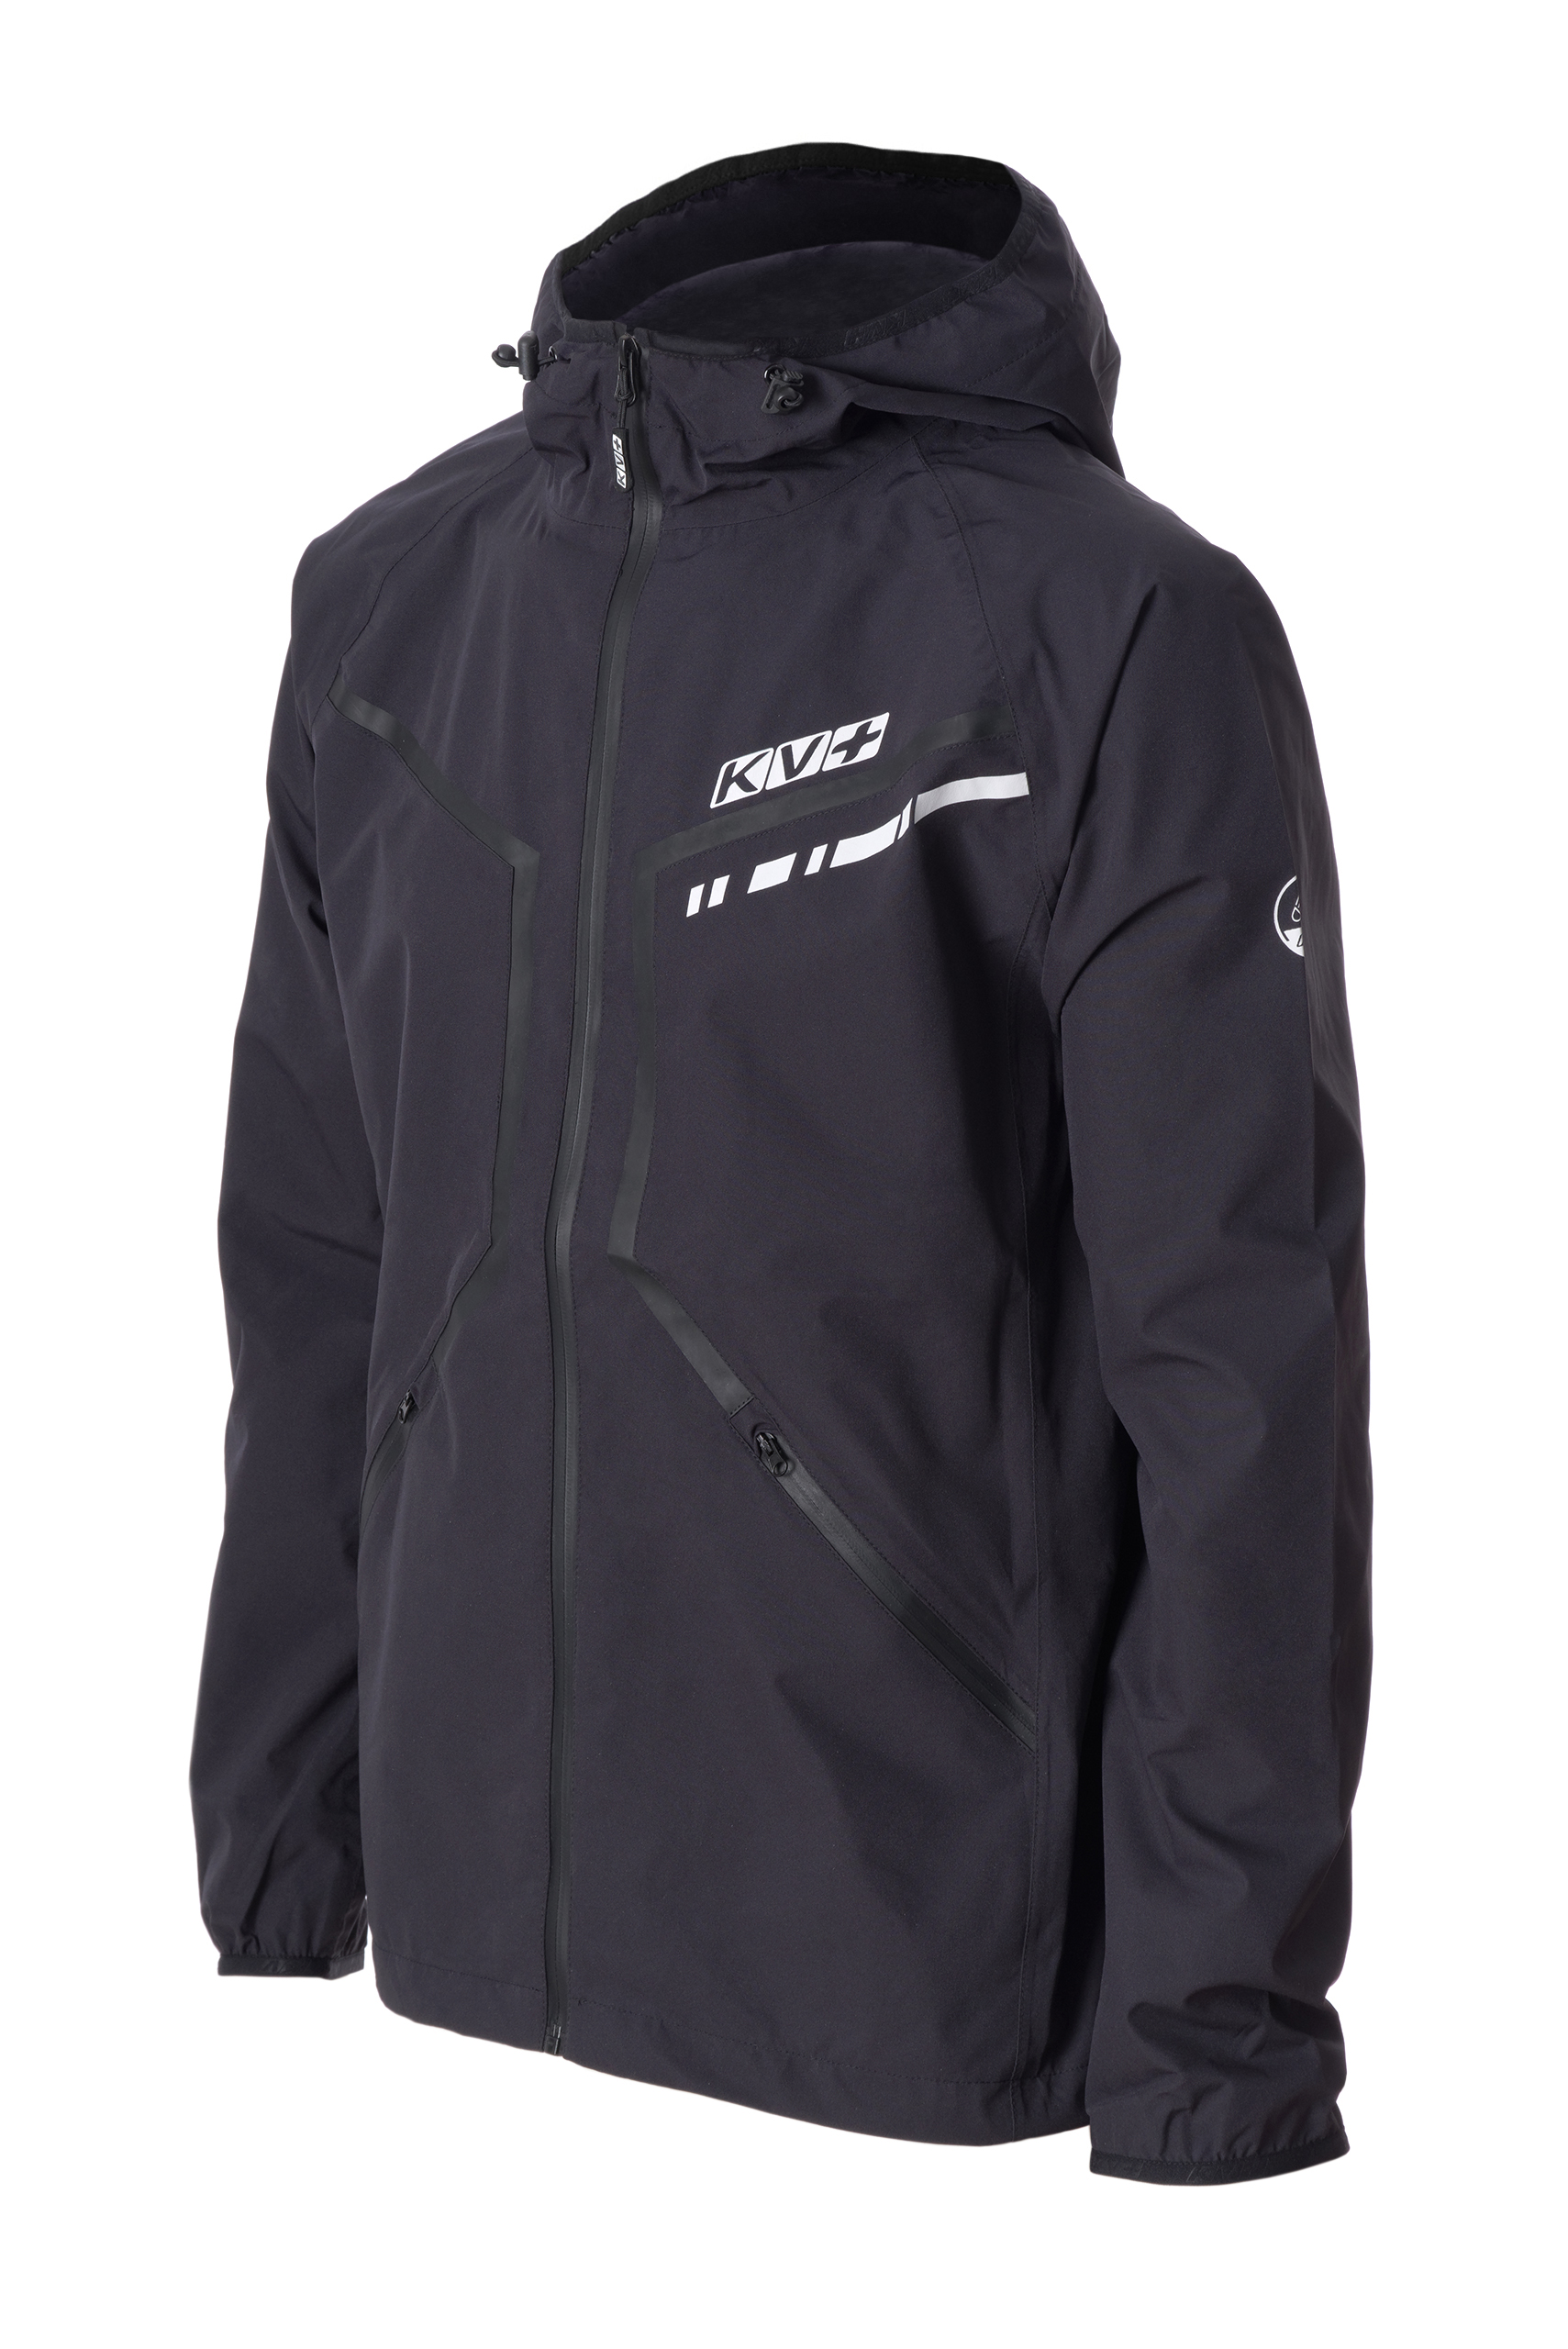 Спортивная ветровка унисекс KV+ IRELAND jacket waterproof черная S